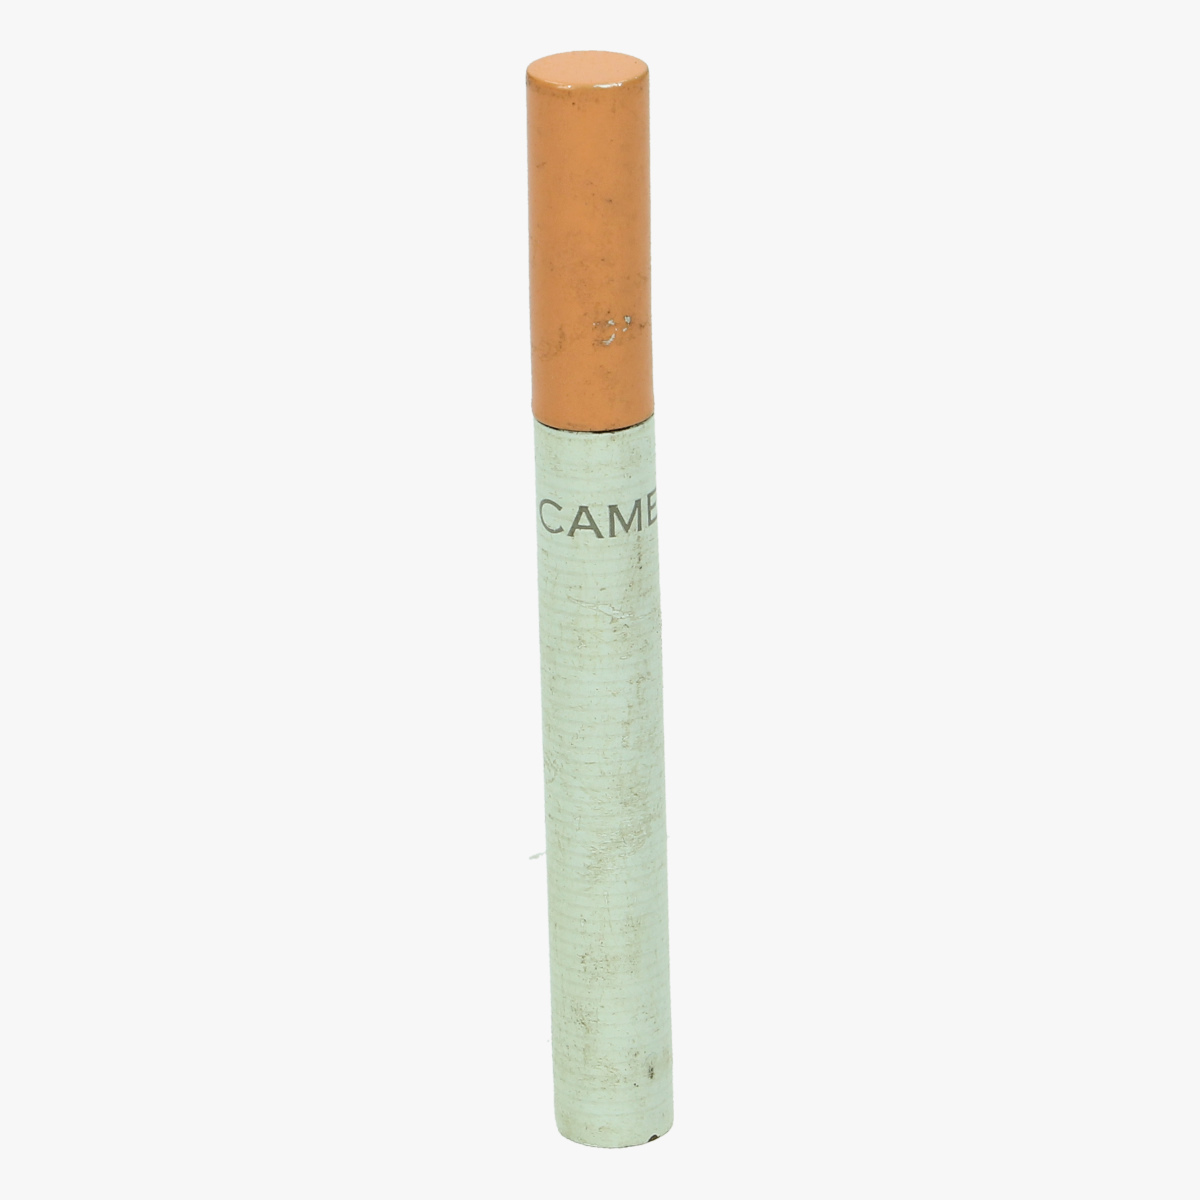 Afbeeldingen van aansteker sigaret camel